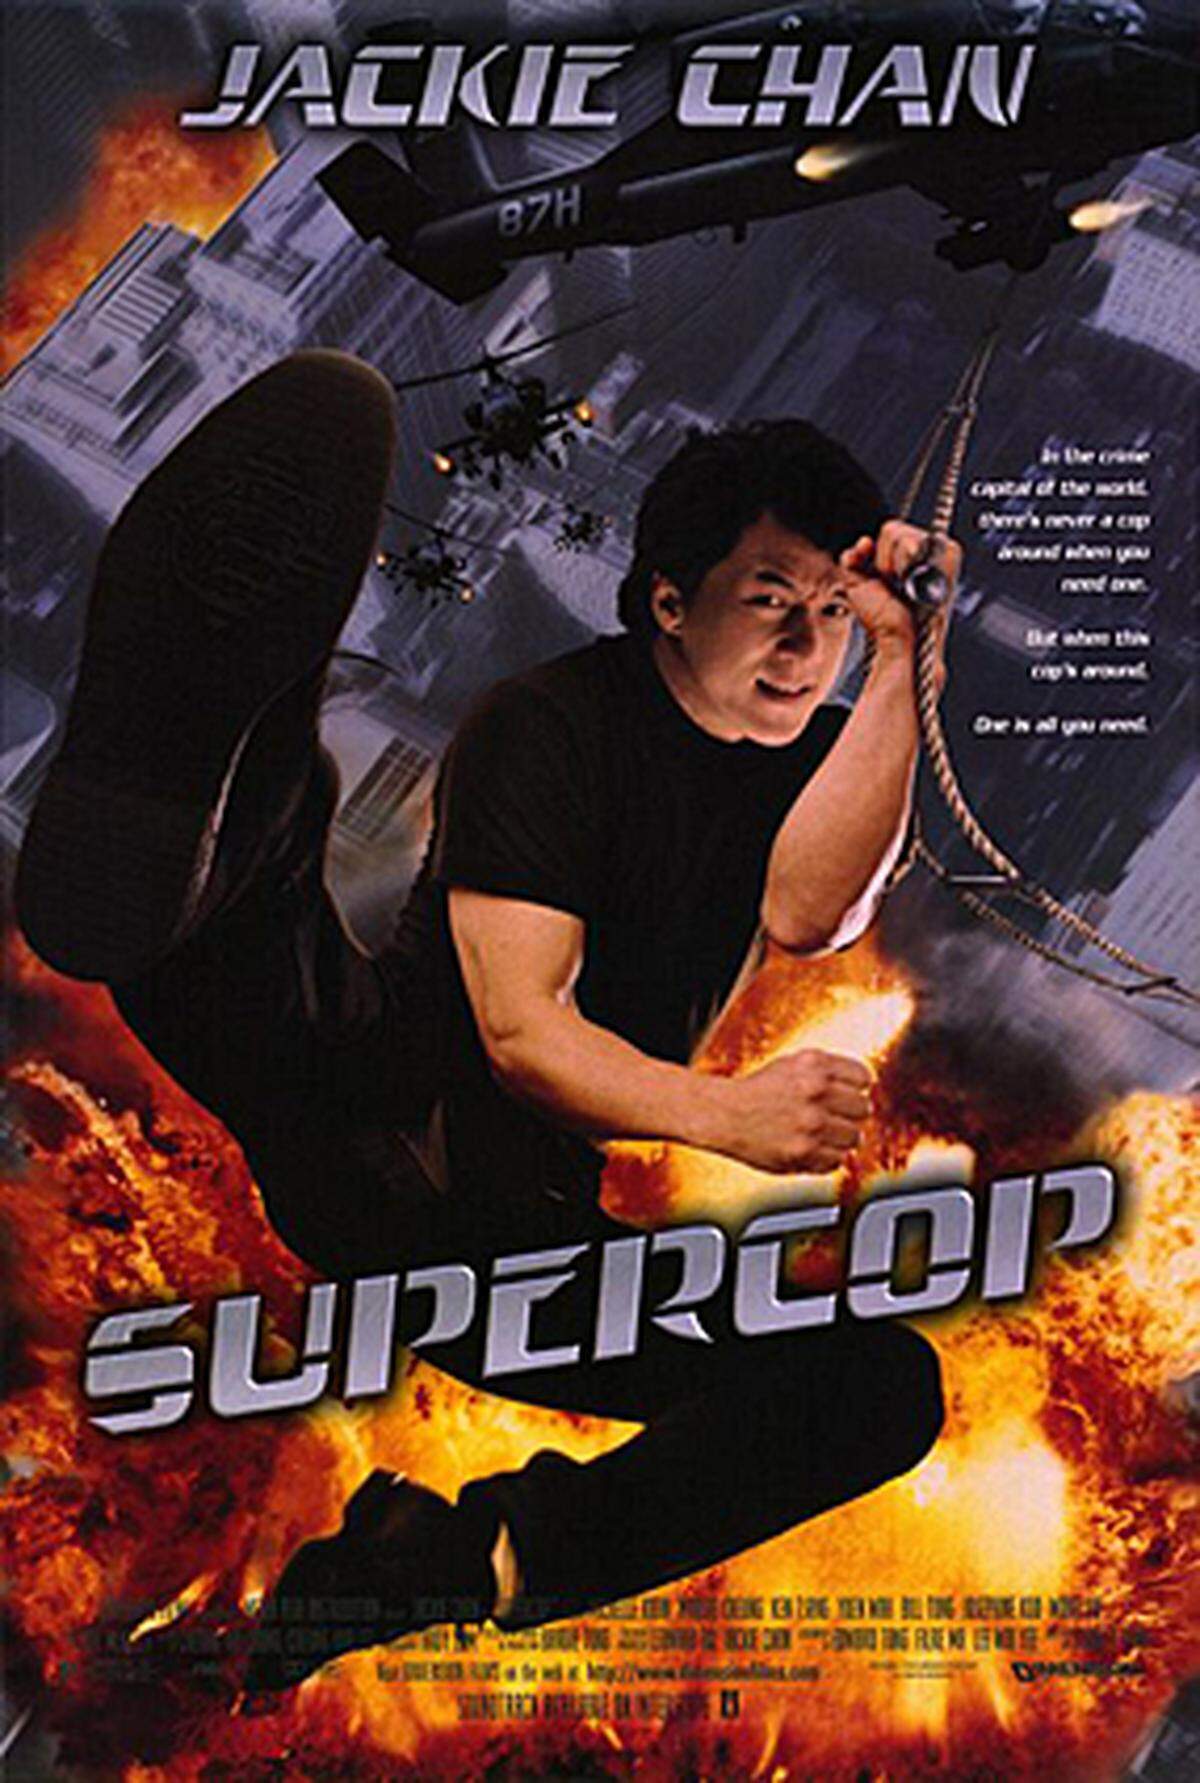 Die Effekte haben es Tarantino in dem dritten Teil von Jackie Chans Martial-Arts-Serie angetan. Der Film habe wohl die besten Stunts, die je gemacht wurden, meint er. Handlung? Nebensache.